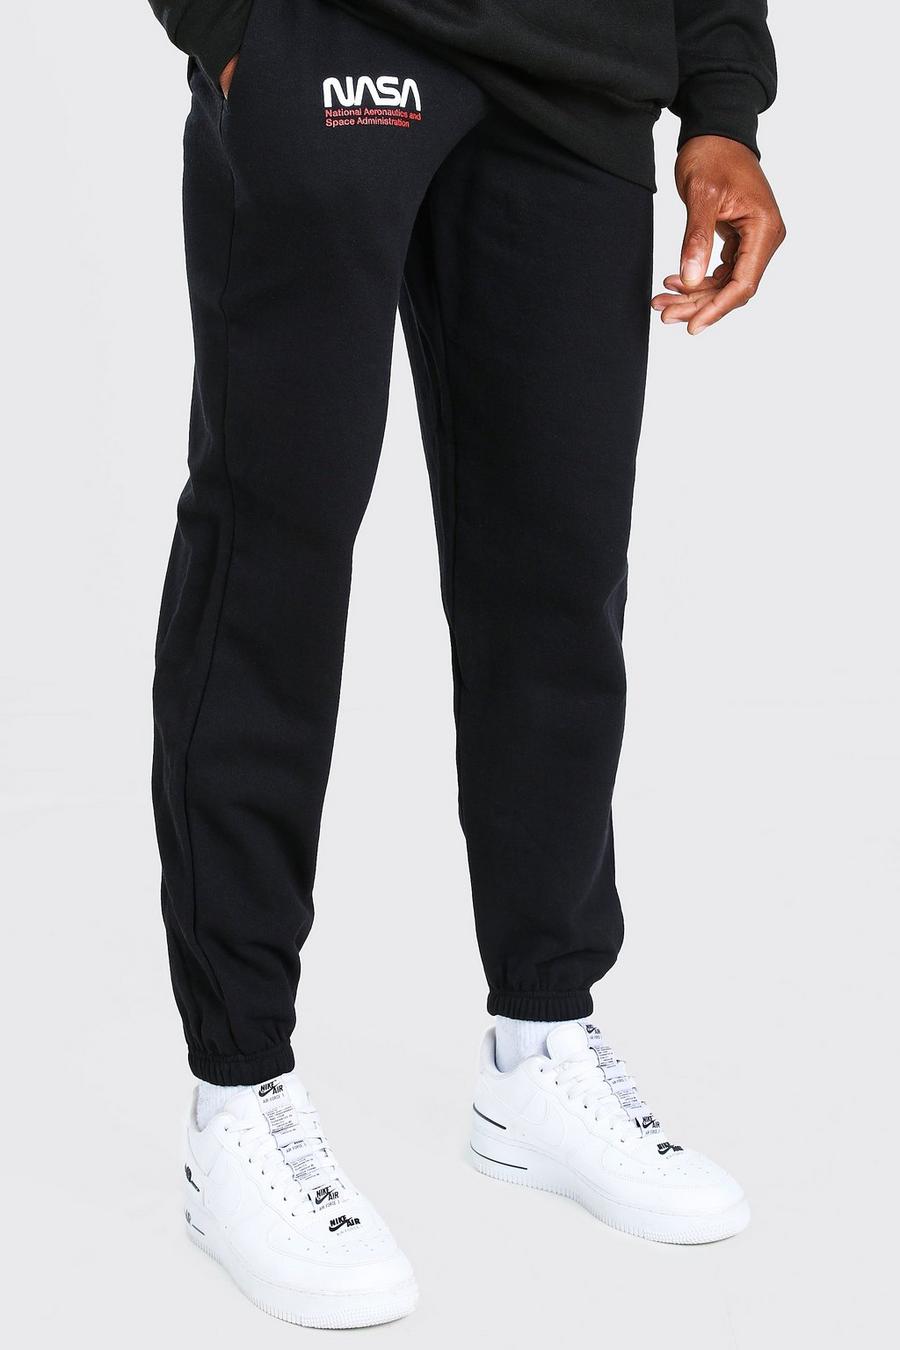 שחור negro מכנסי ריצה במיתוג נאס"א עם הדפס image number 1